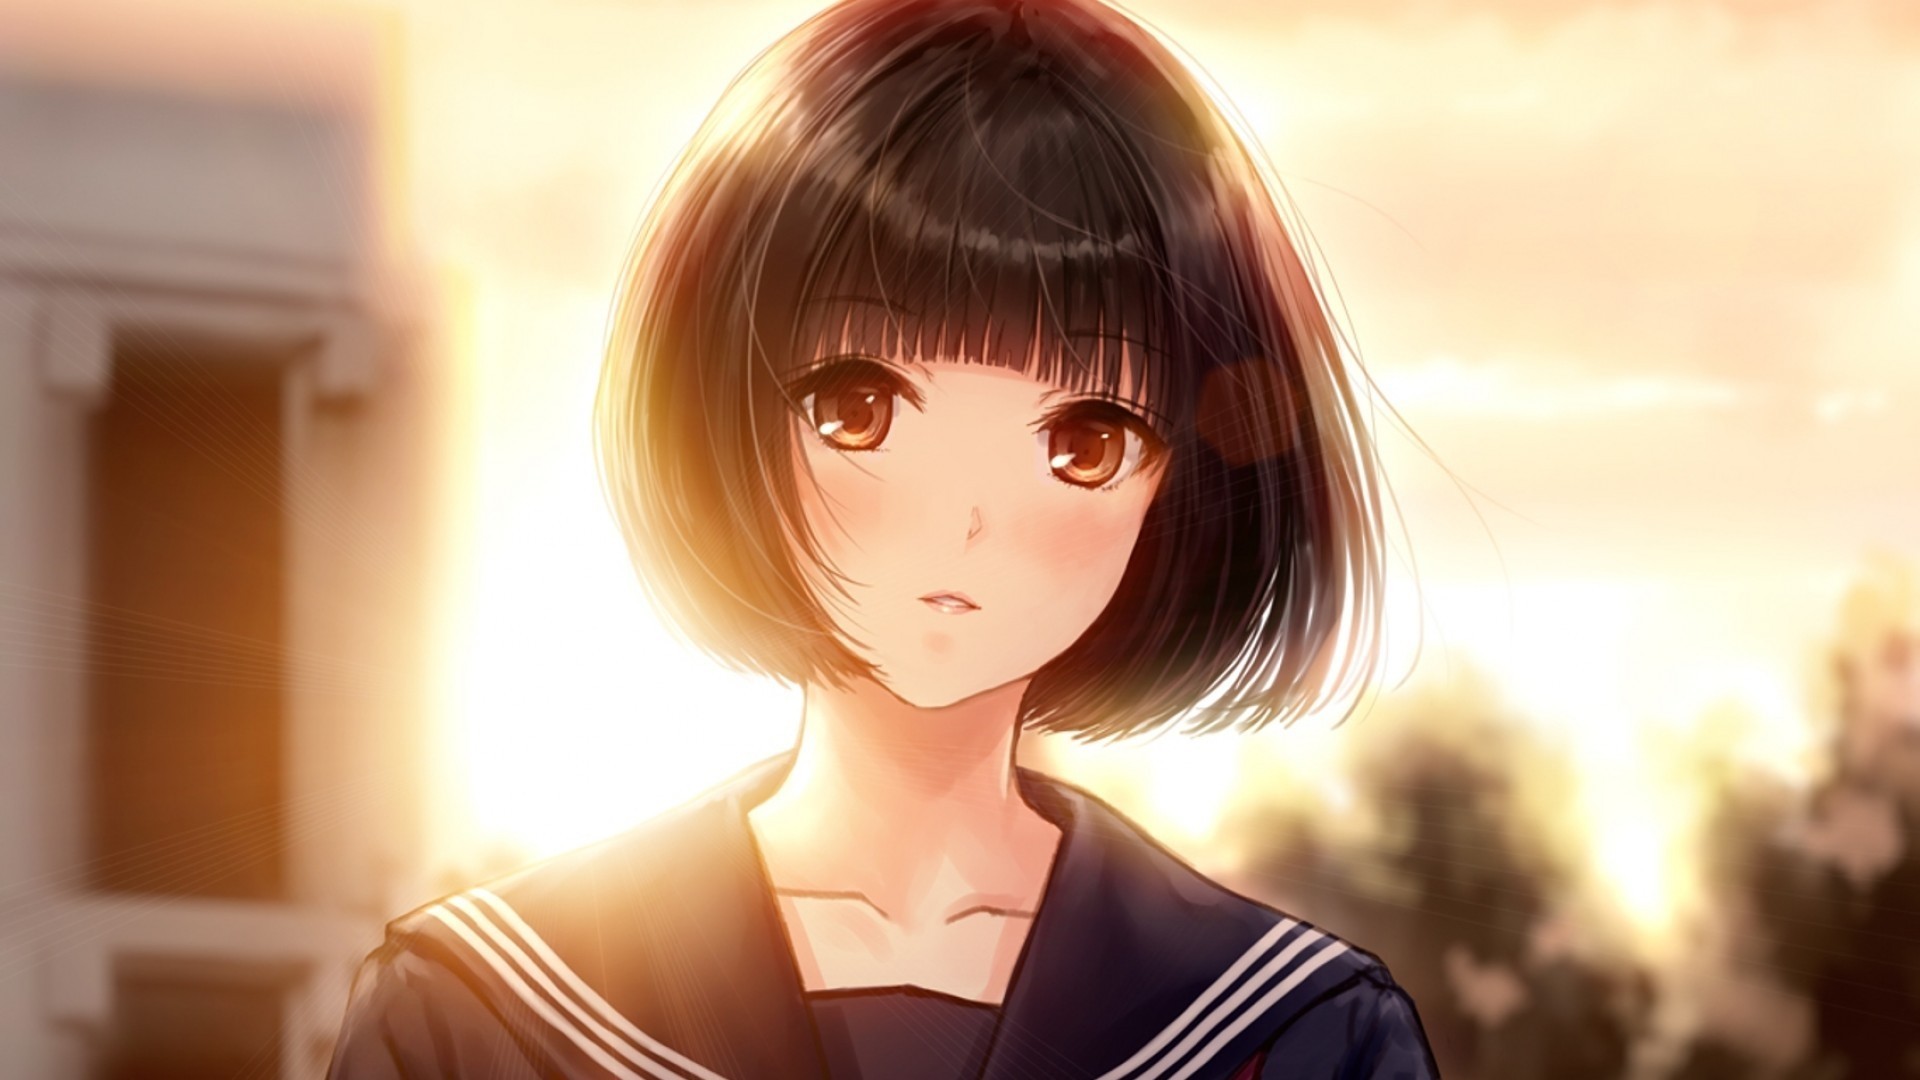 Anime Girl Short Hair Wallpaper image hd